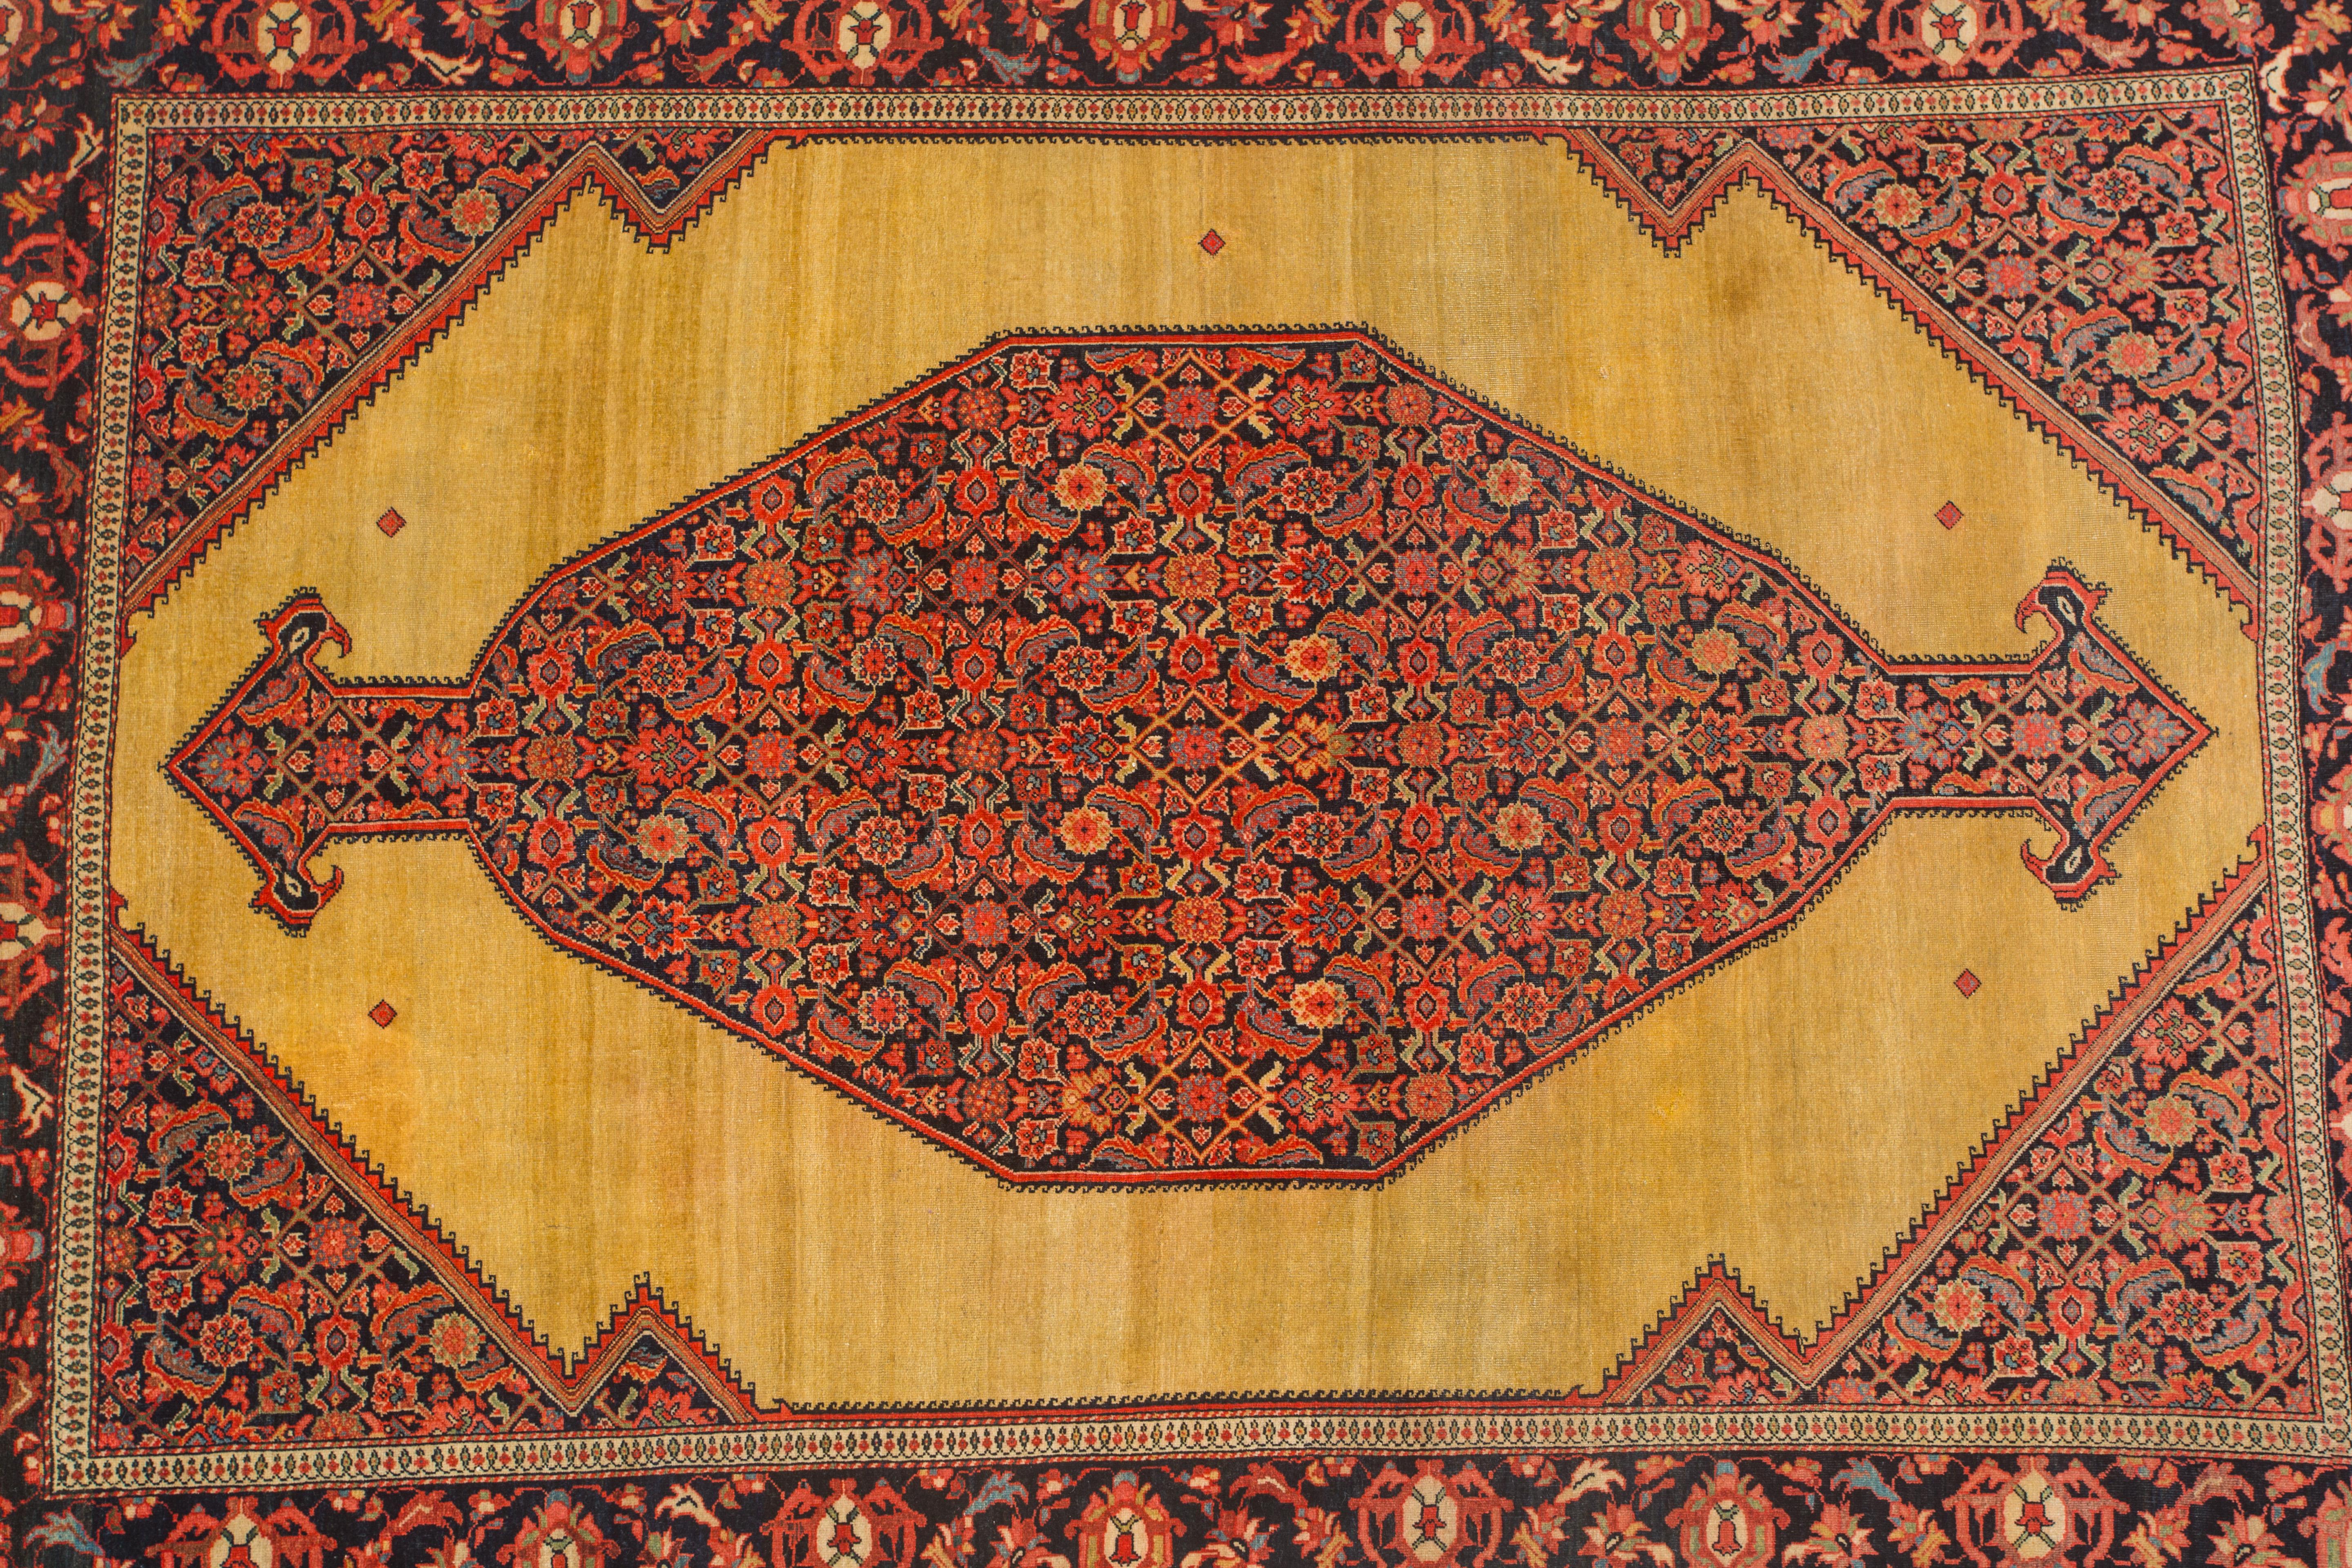 Ferahan Sarouk Museum Qualität
MUSEUMSQUALITÄT Ferahan Sarouk, drittes Viertel 19. 
6,6 x 4,5 Fuß 

Von einem Sammler aus den USA

Ferahan-Sarouk-Teppiche, die zwischen 1850 und 1910 im Großraum Arak (ehemals Sultanabad) hergestellt wurden,